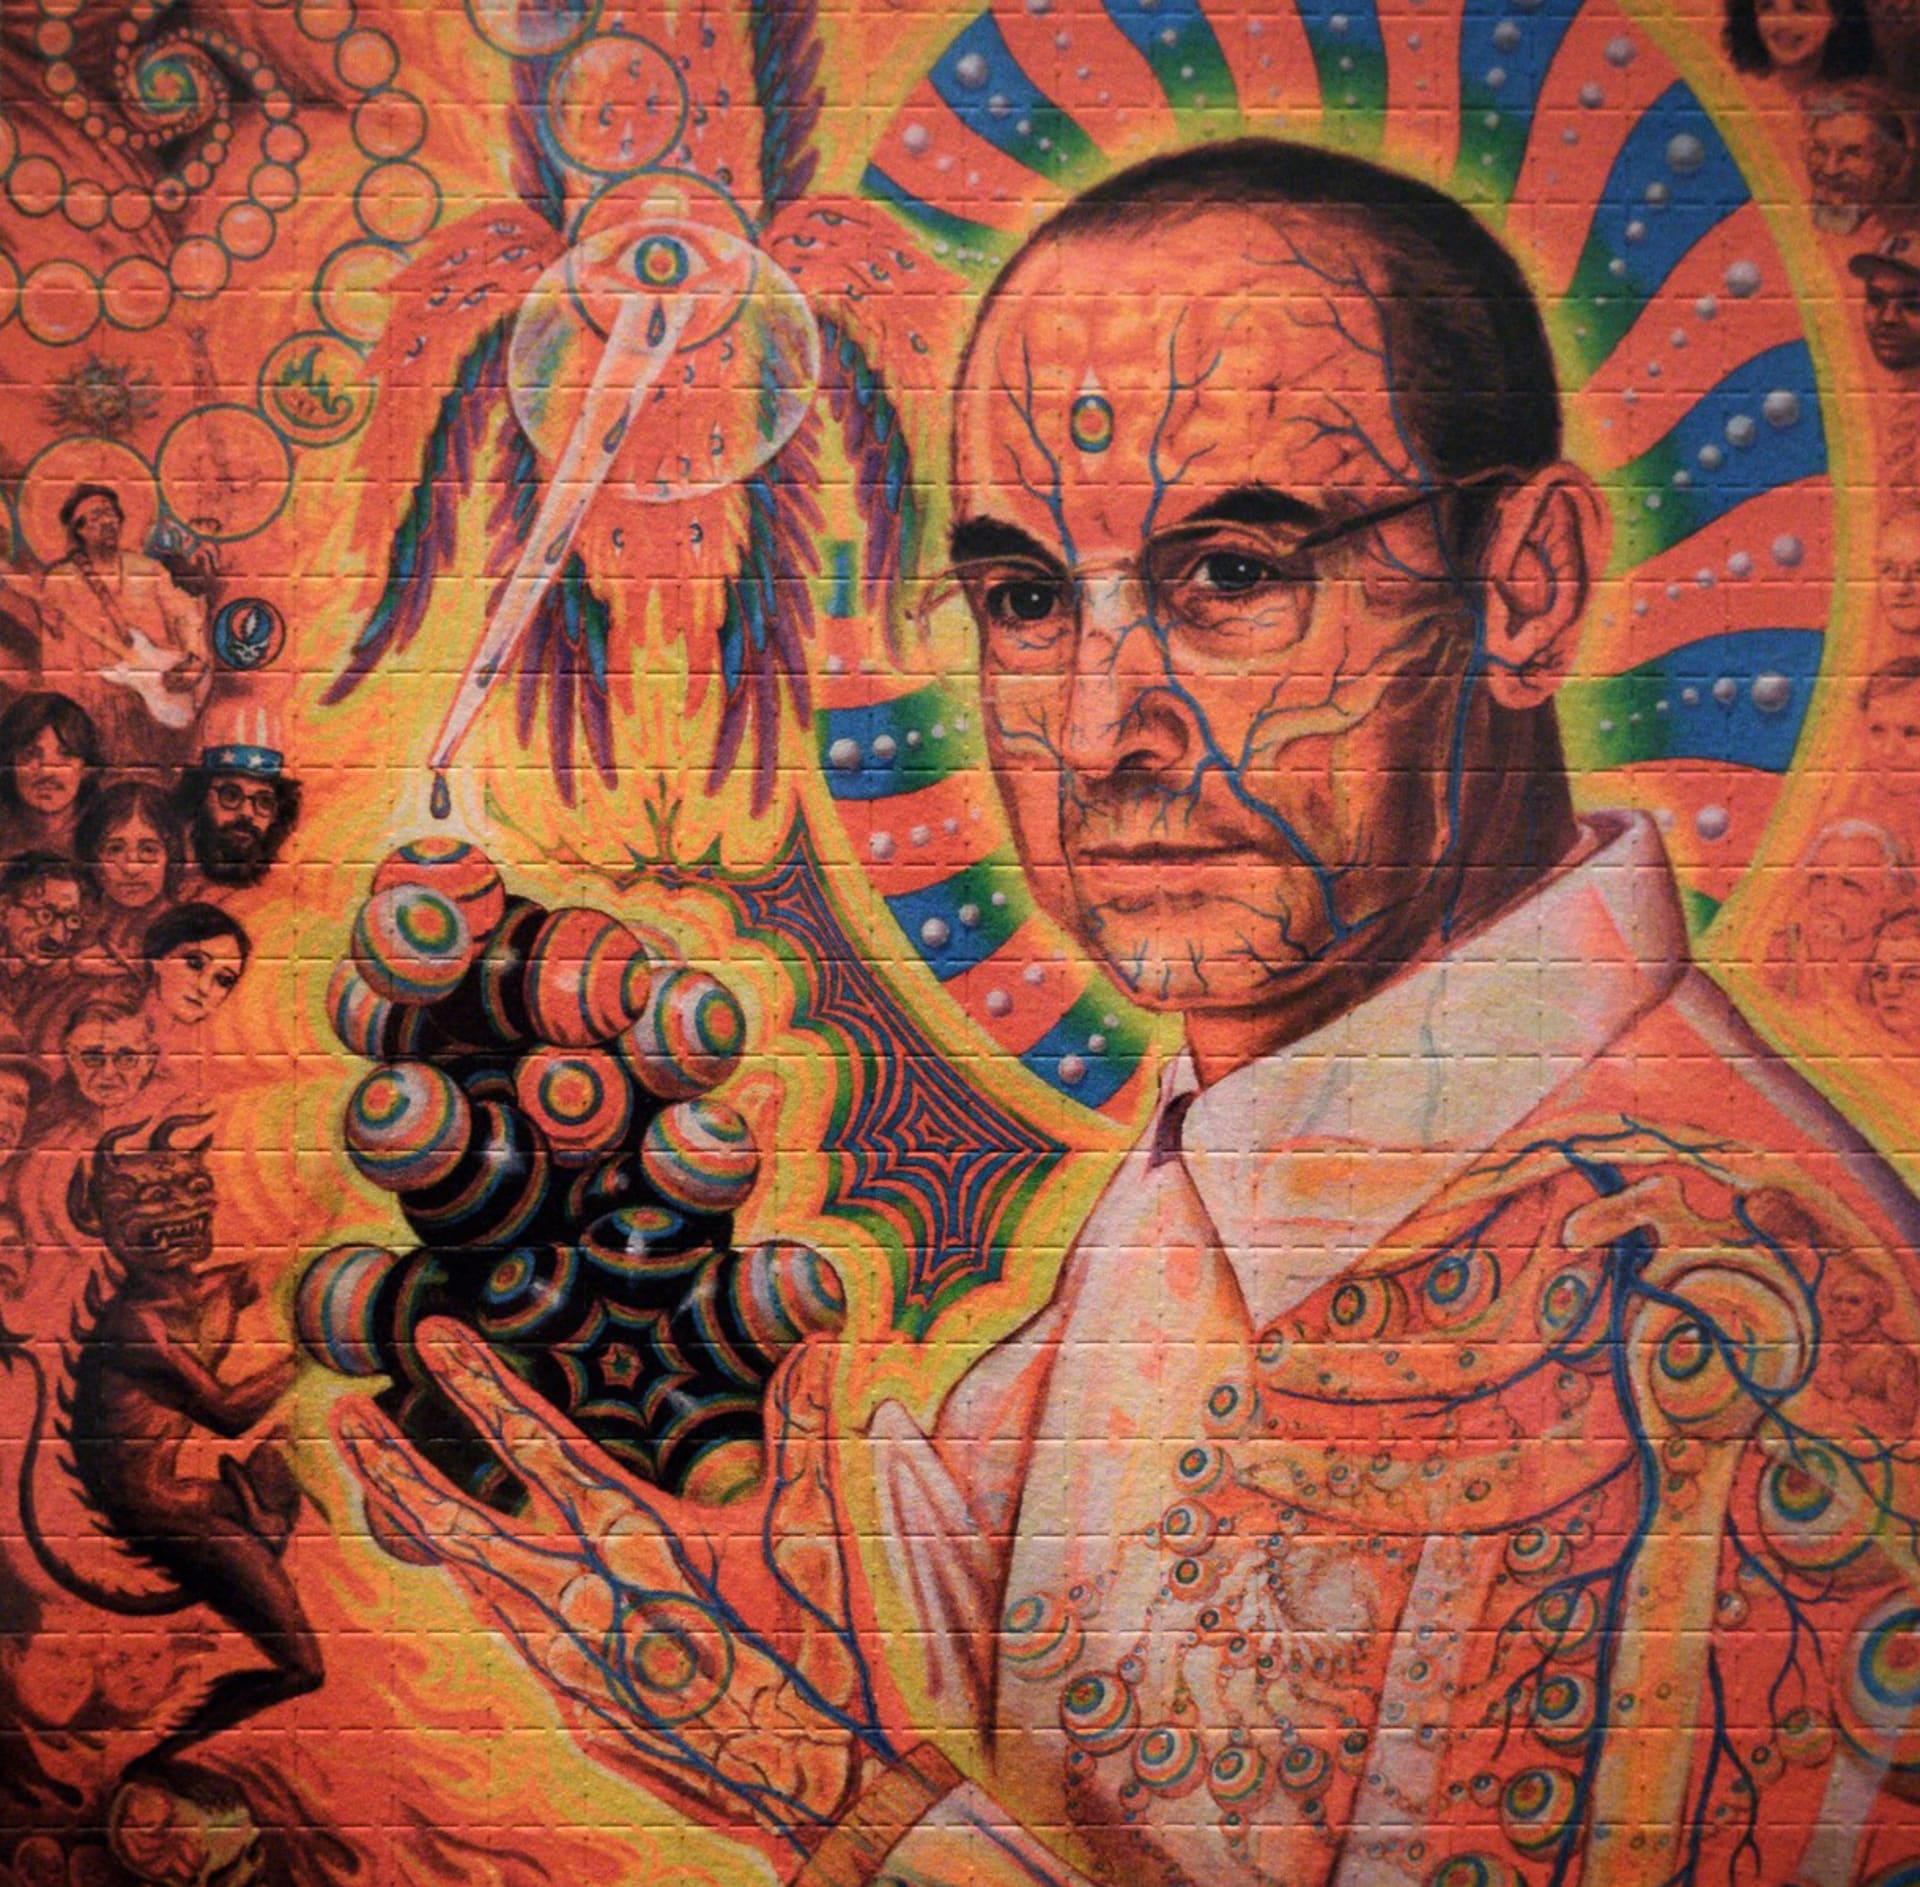 Psychoaktivní účinky LSD doktor Albert Hofmann poprvé experimentálně vyzkoušel před osmdesáti lety. Tehdy si naordinoval 250 mikrogramů LSD, sedl na kolo a vyrazil směrem k domovu.